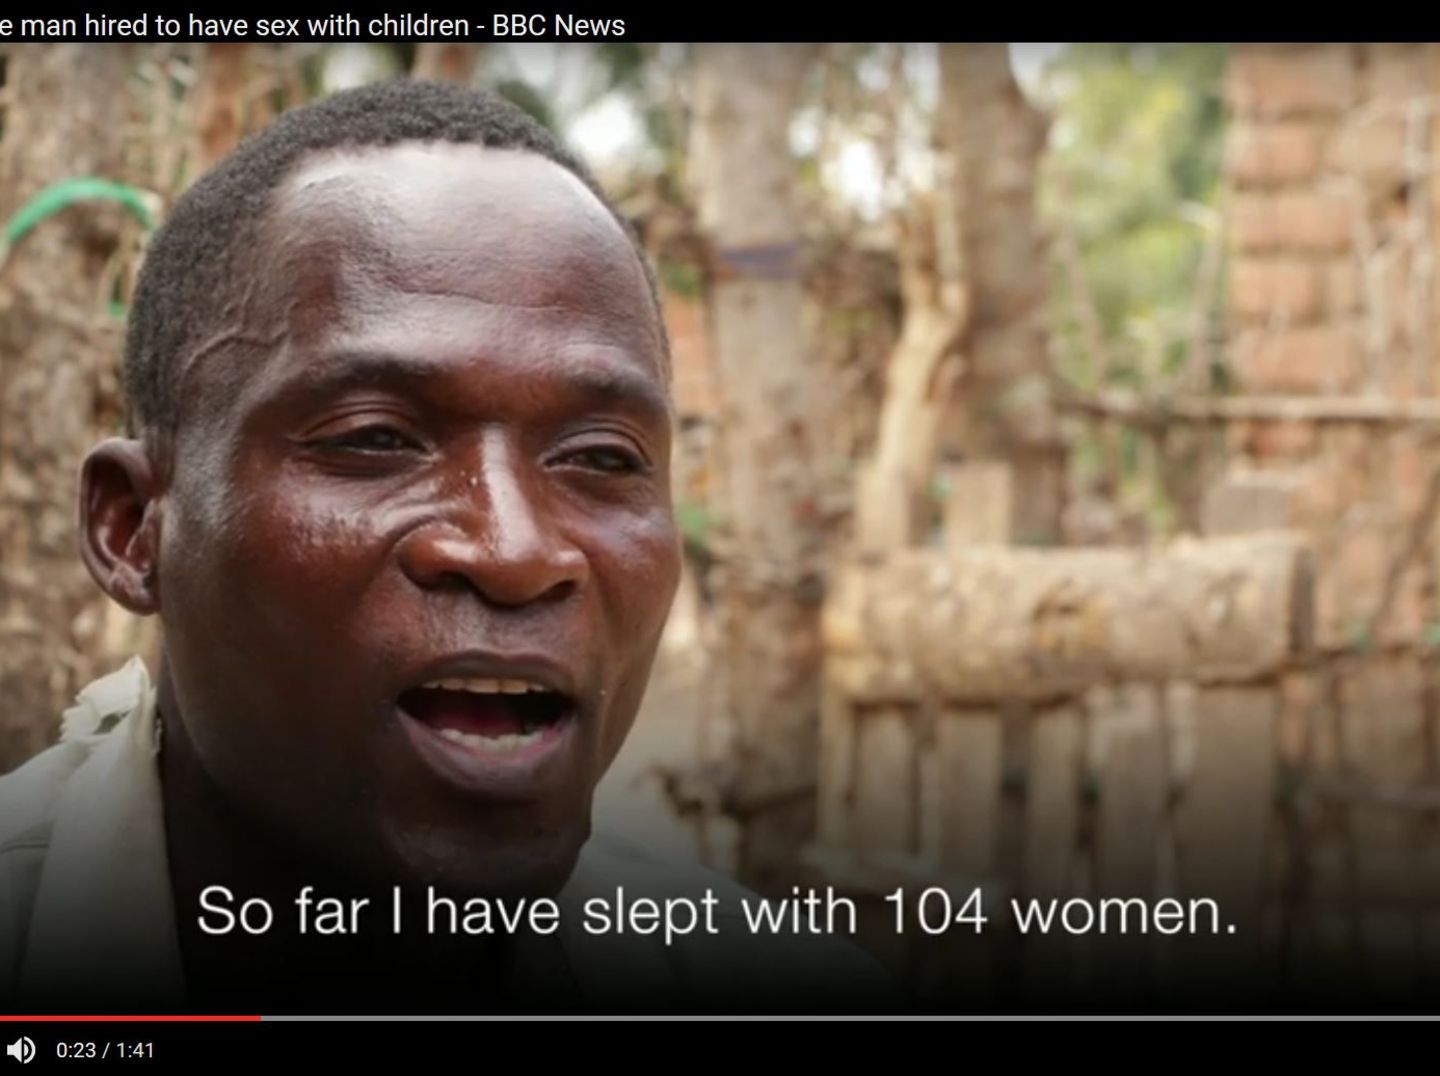 Malawi Der Mann, der für Entjungferung junger Mädchen bezahlt wird STERN.de